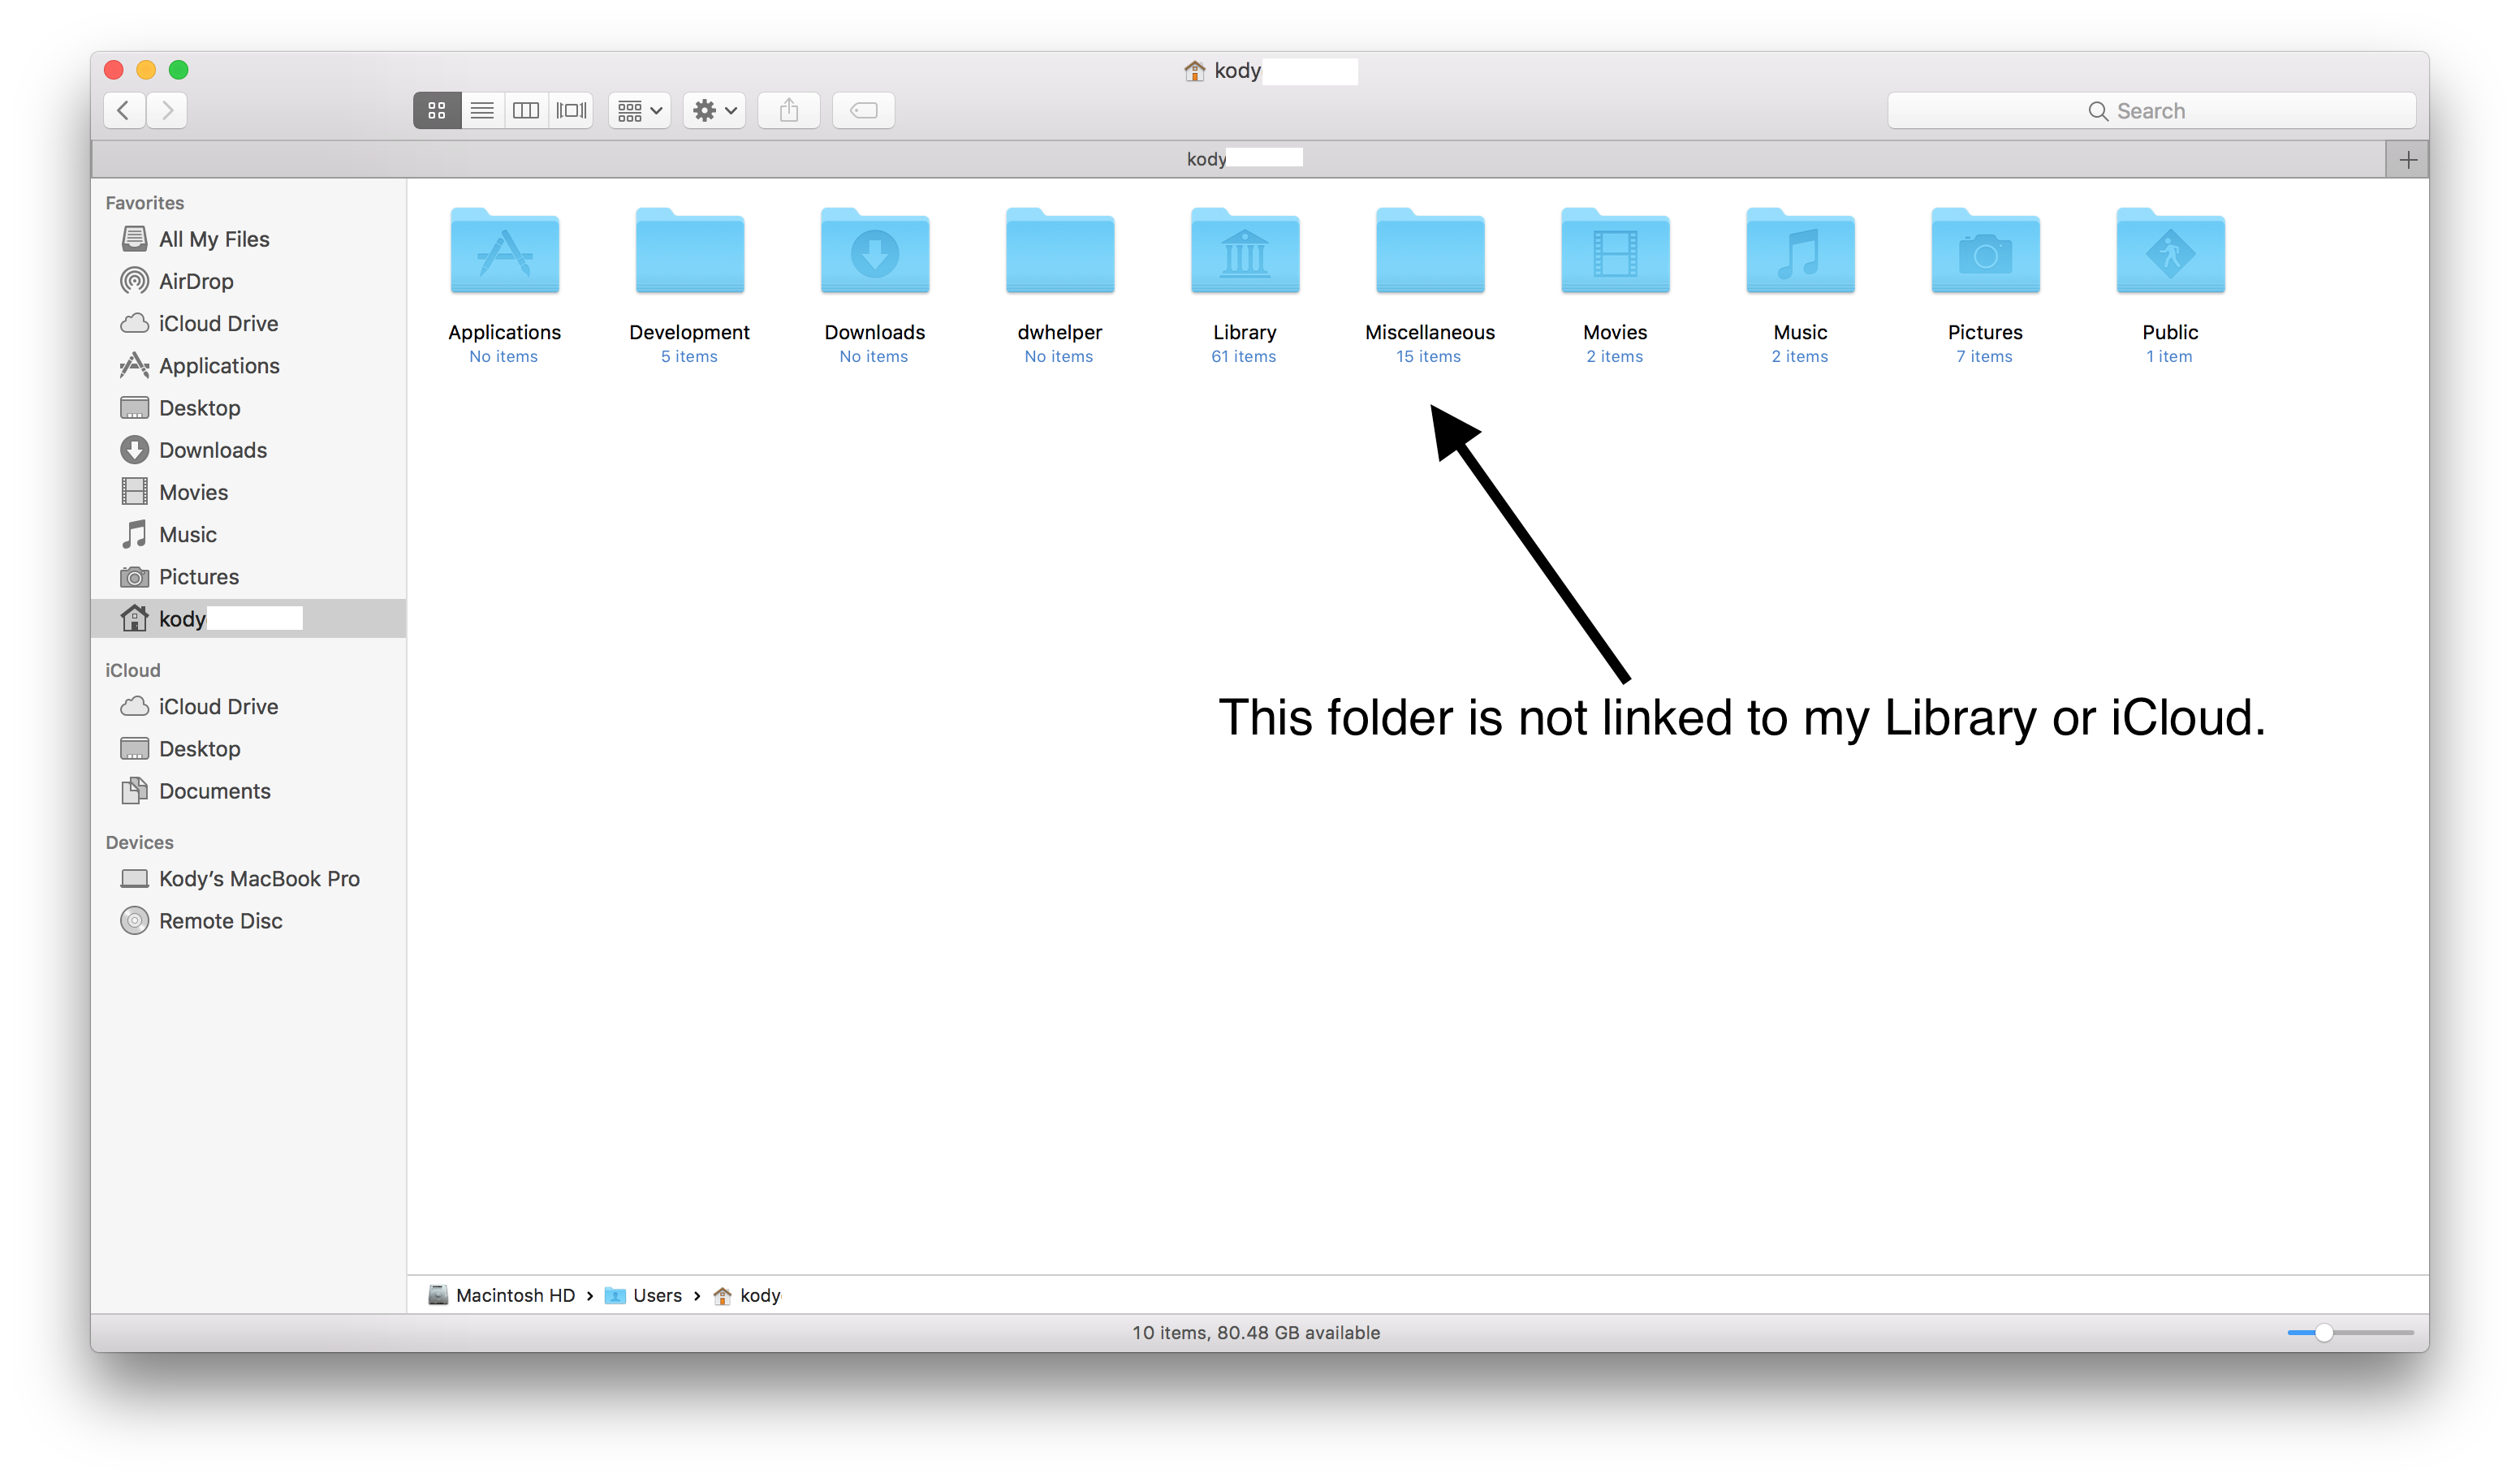 Jak odstraním soubory z iCloud, ale ponechám je na Mac?